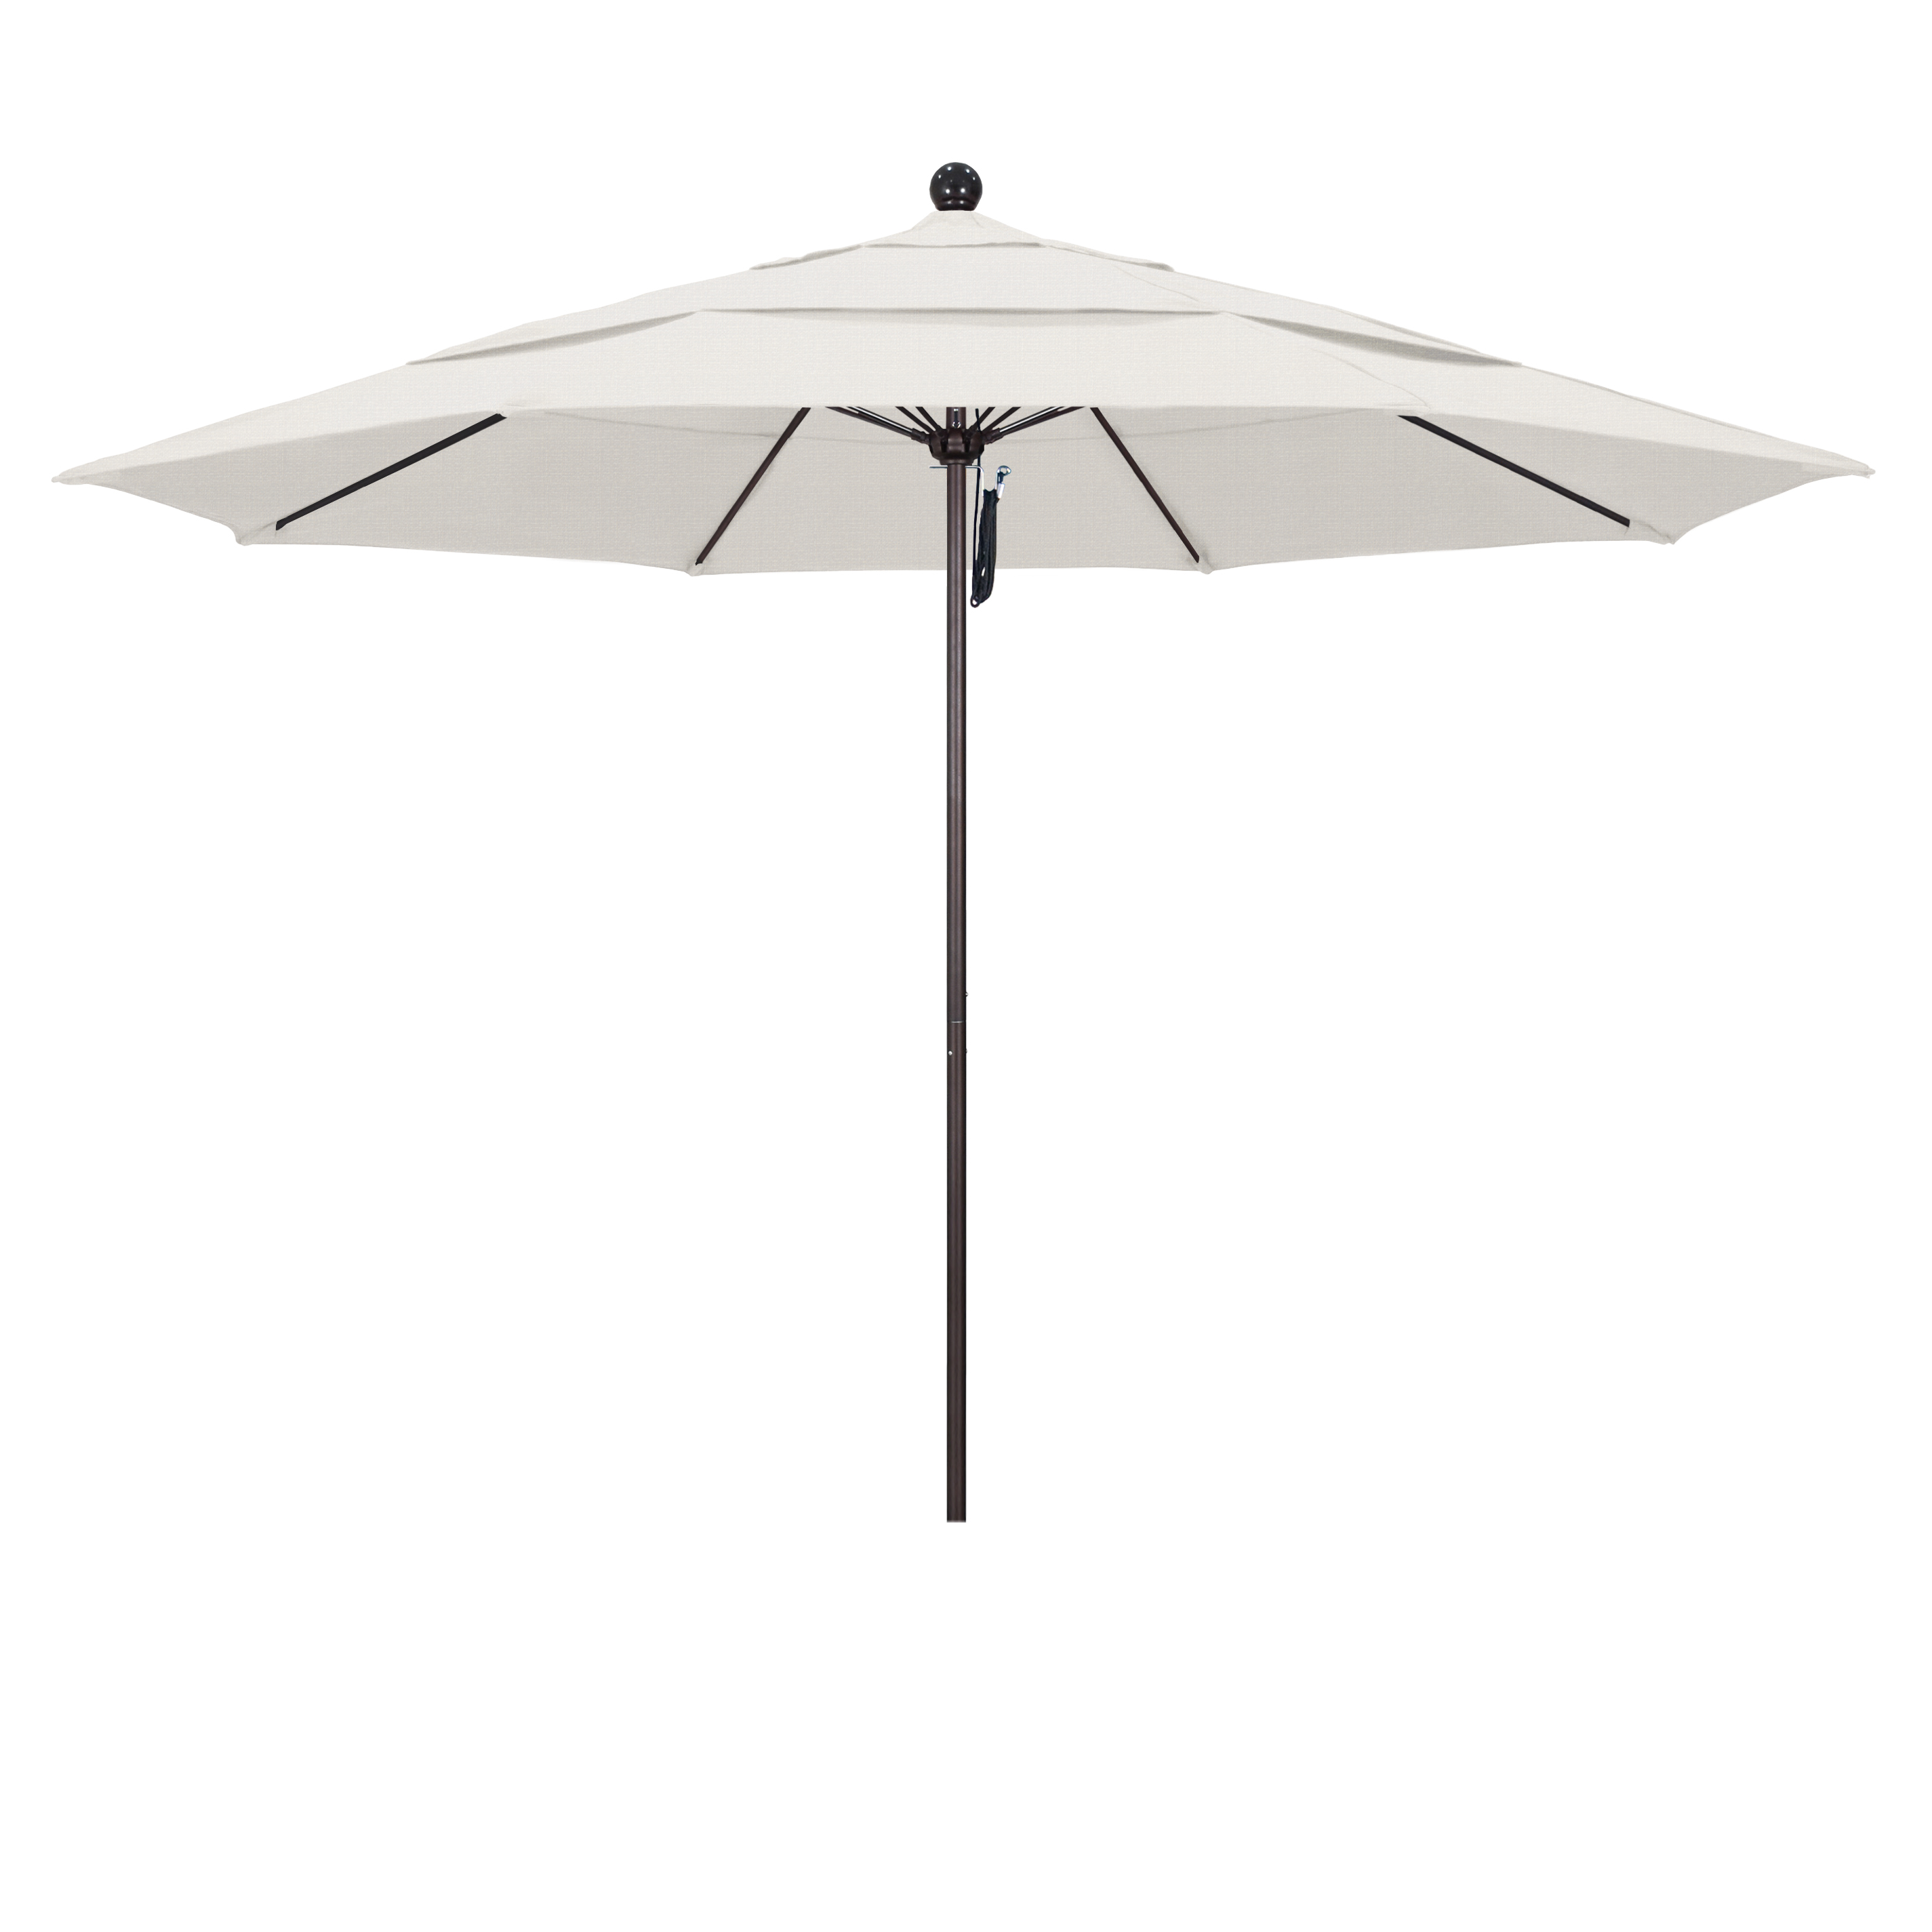 Picture of California Umbrella ALTO118117-F77-DWV 11 ft. Fiberglass Market Umbrella PO DVent Bronze-Olefin-Woven Granite